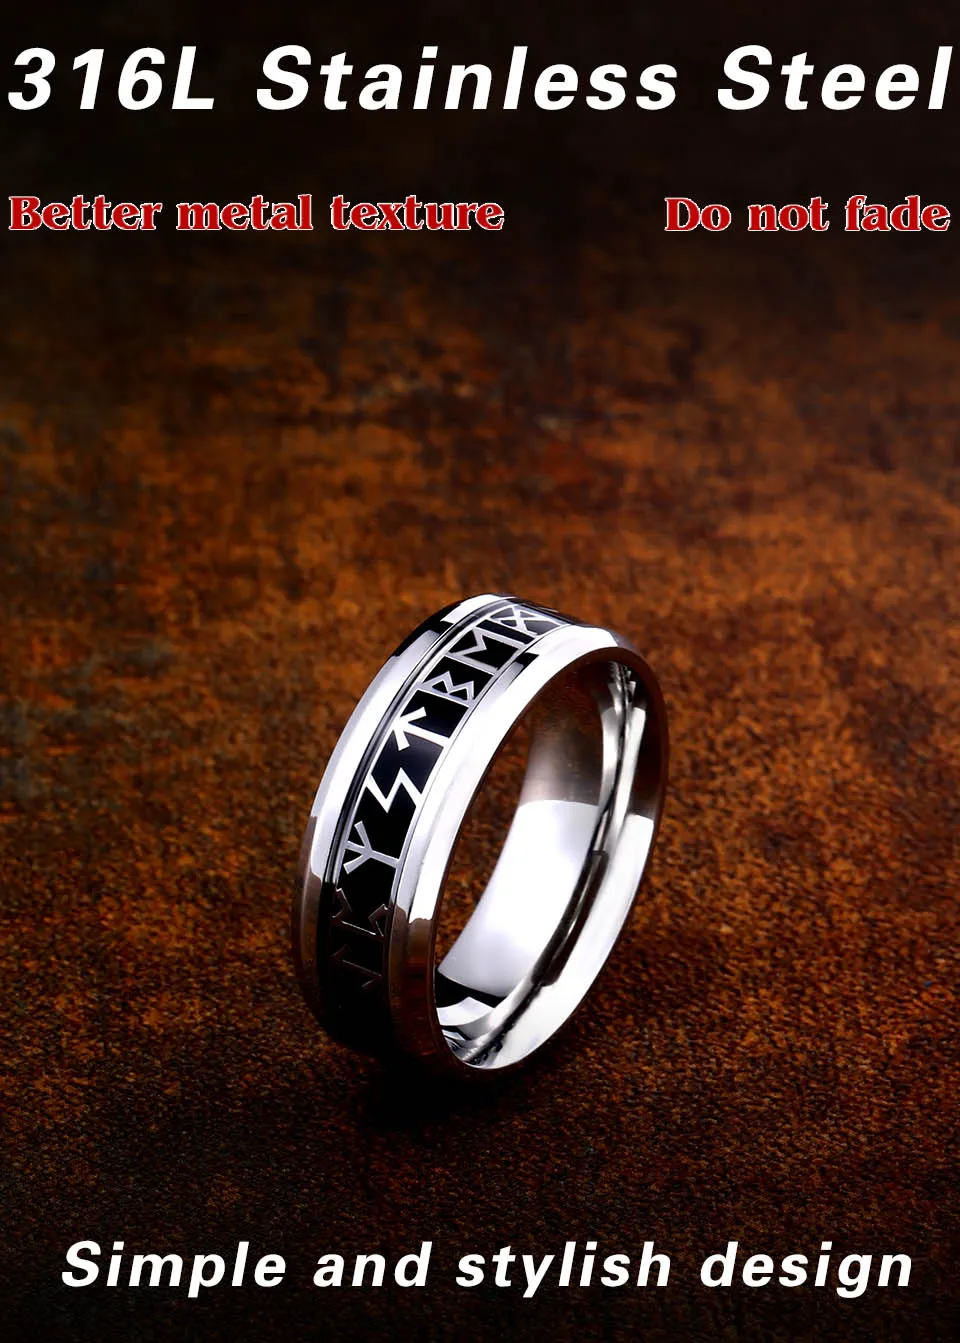 Байер ширина 8 мм модное кольцо Руна викингов Простые Свадебные украшения для мужчин и женщин подарок для влюбленных Ретро стиль Прямая поставка WR-R121